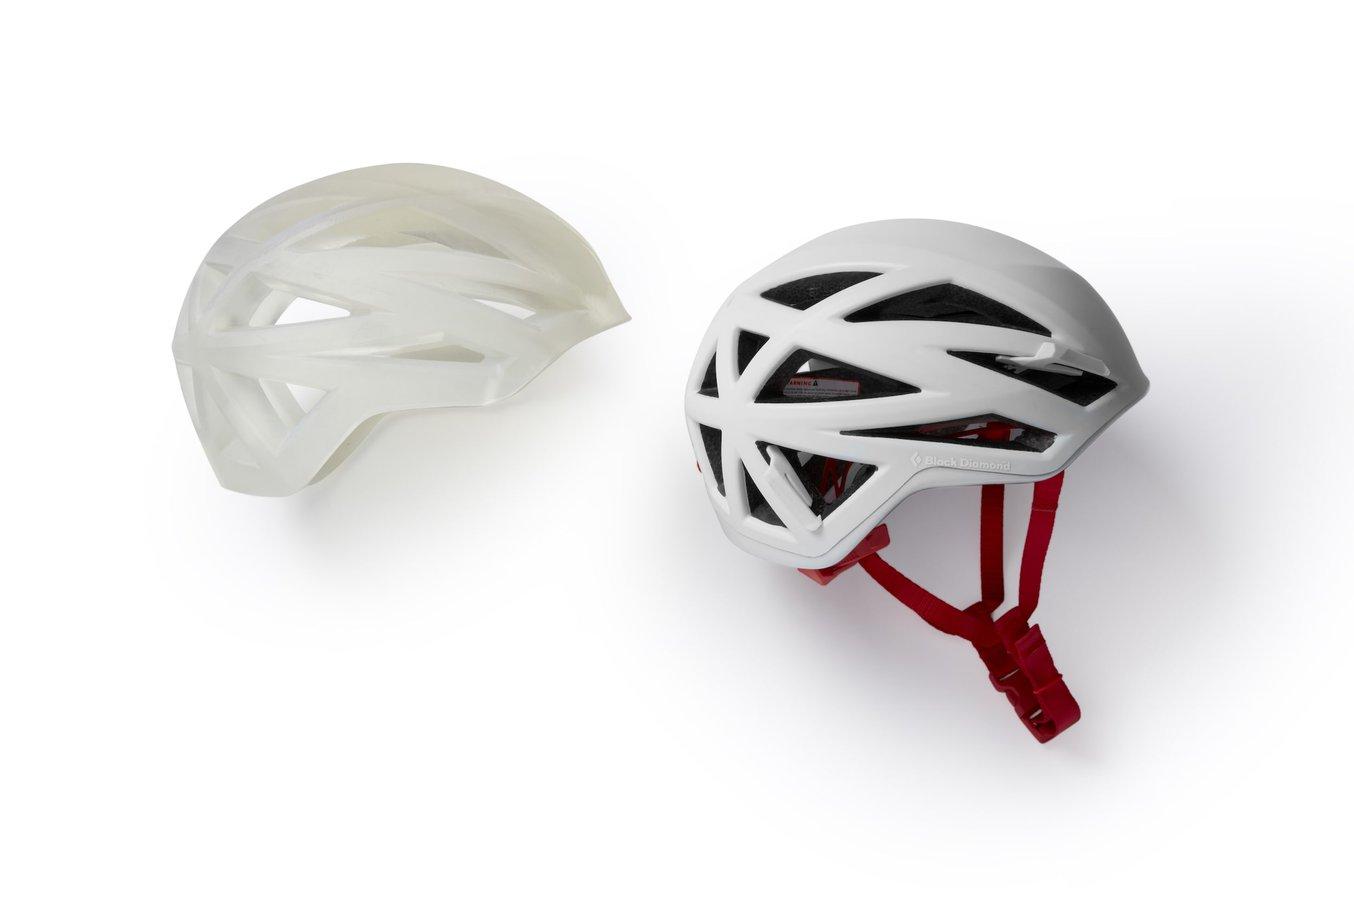 Prototipi di un casco realizzati in scala reale con la Form 3L su sfondo rosso